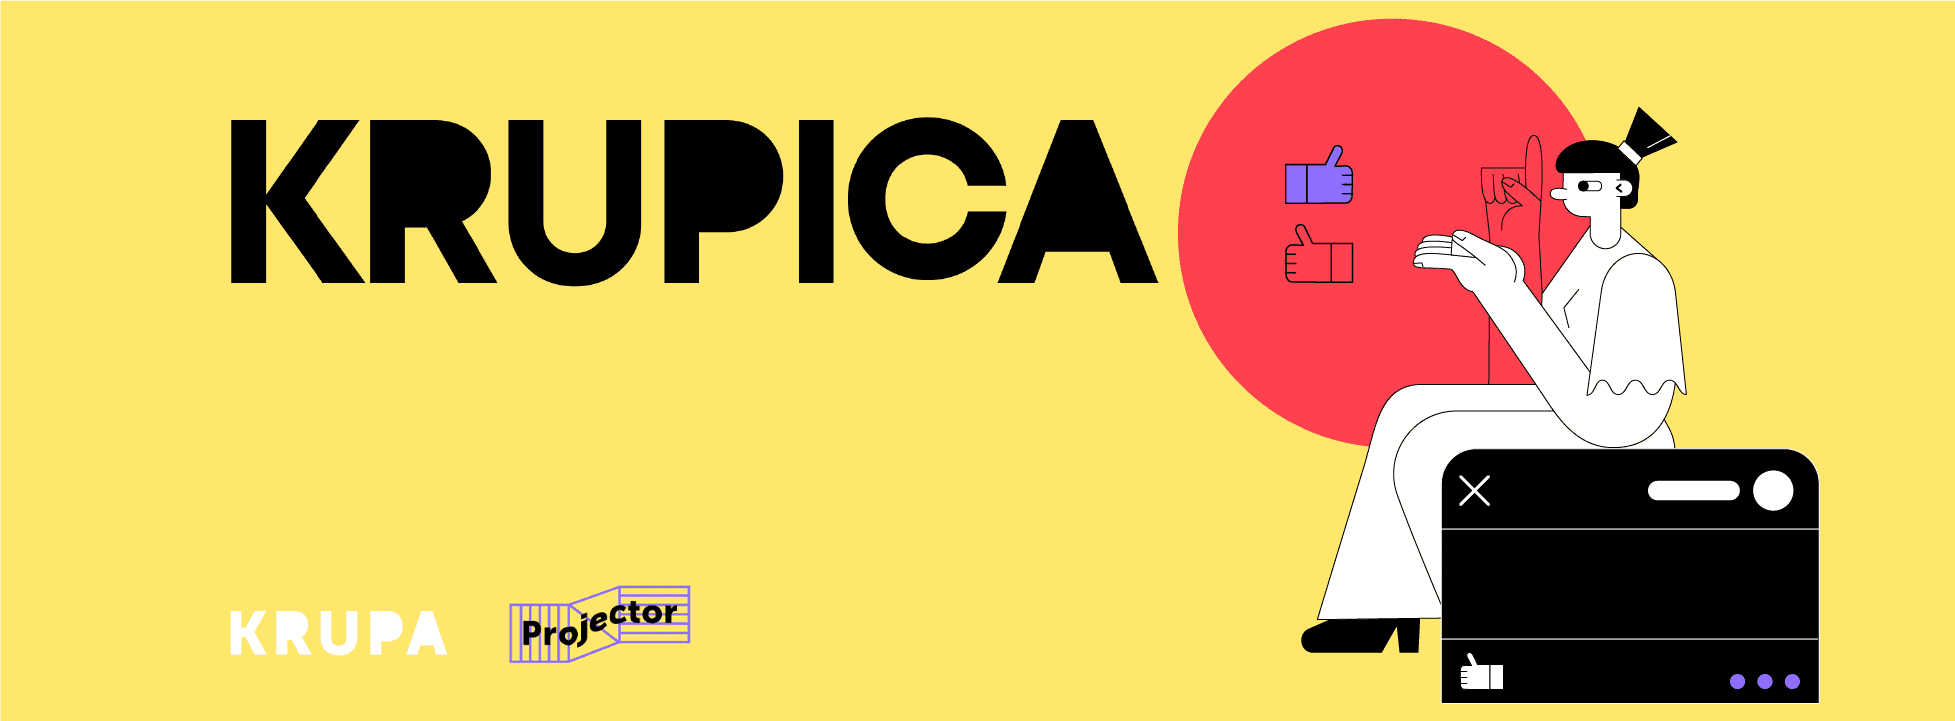 Projector проведе онлайн-конференцію Krupica про дизайн інтерфейсів з міжнародними спікерами  